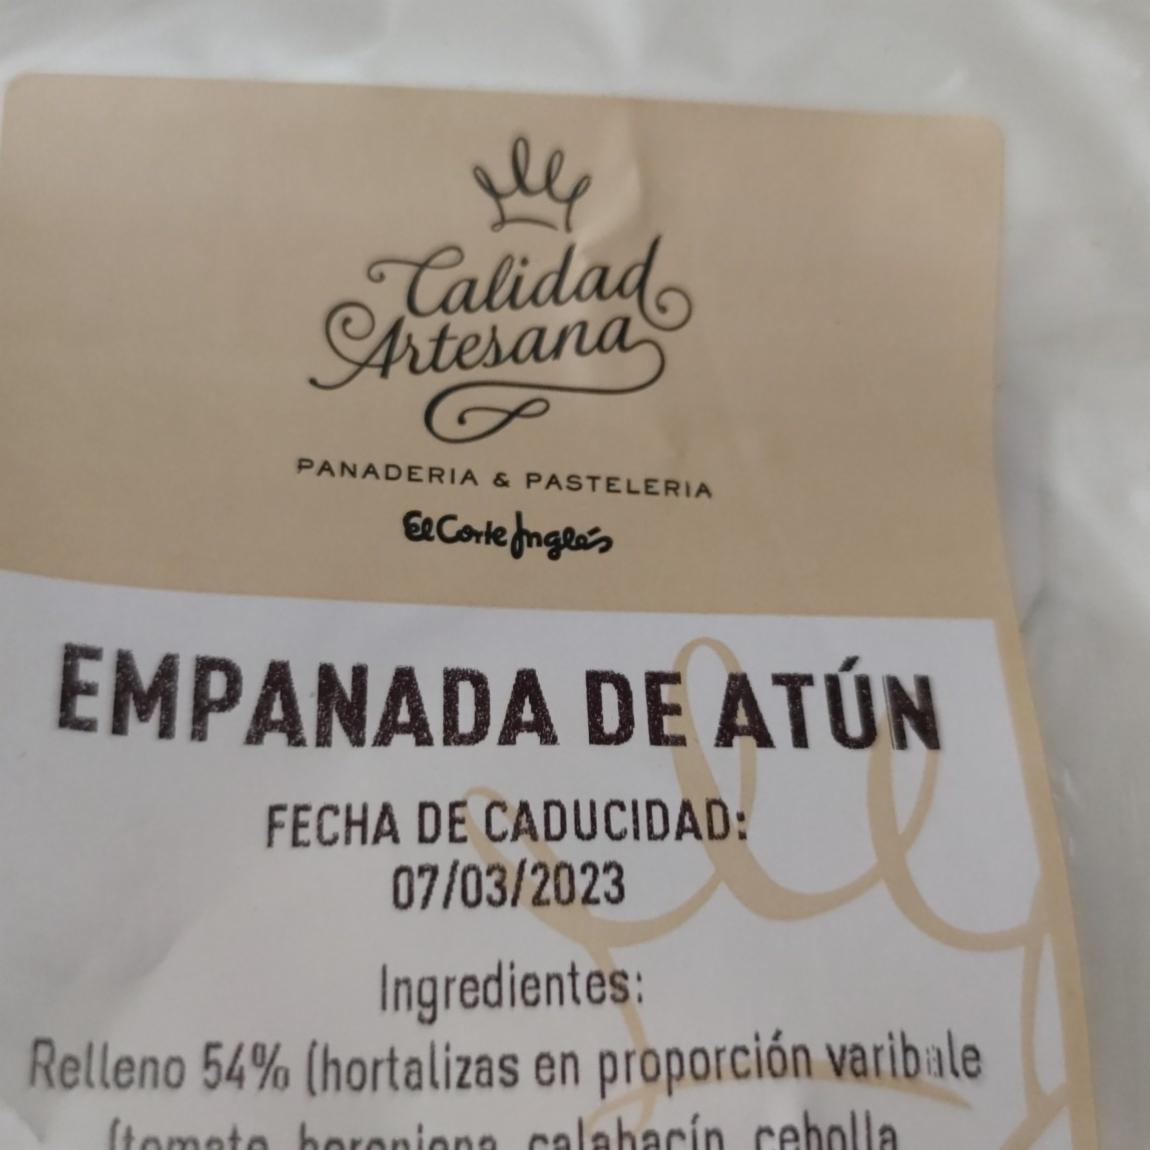 Fotografie - Empanada de atún Calidad Artesana El corte Inglés